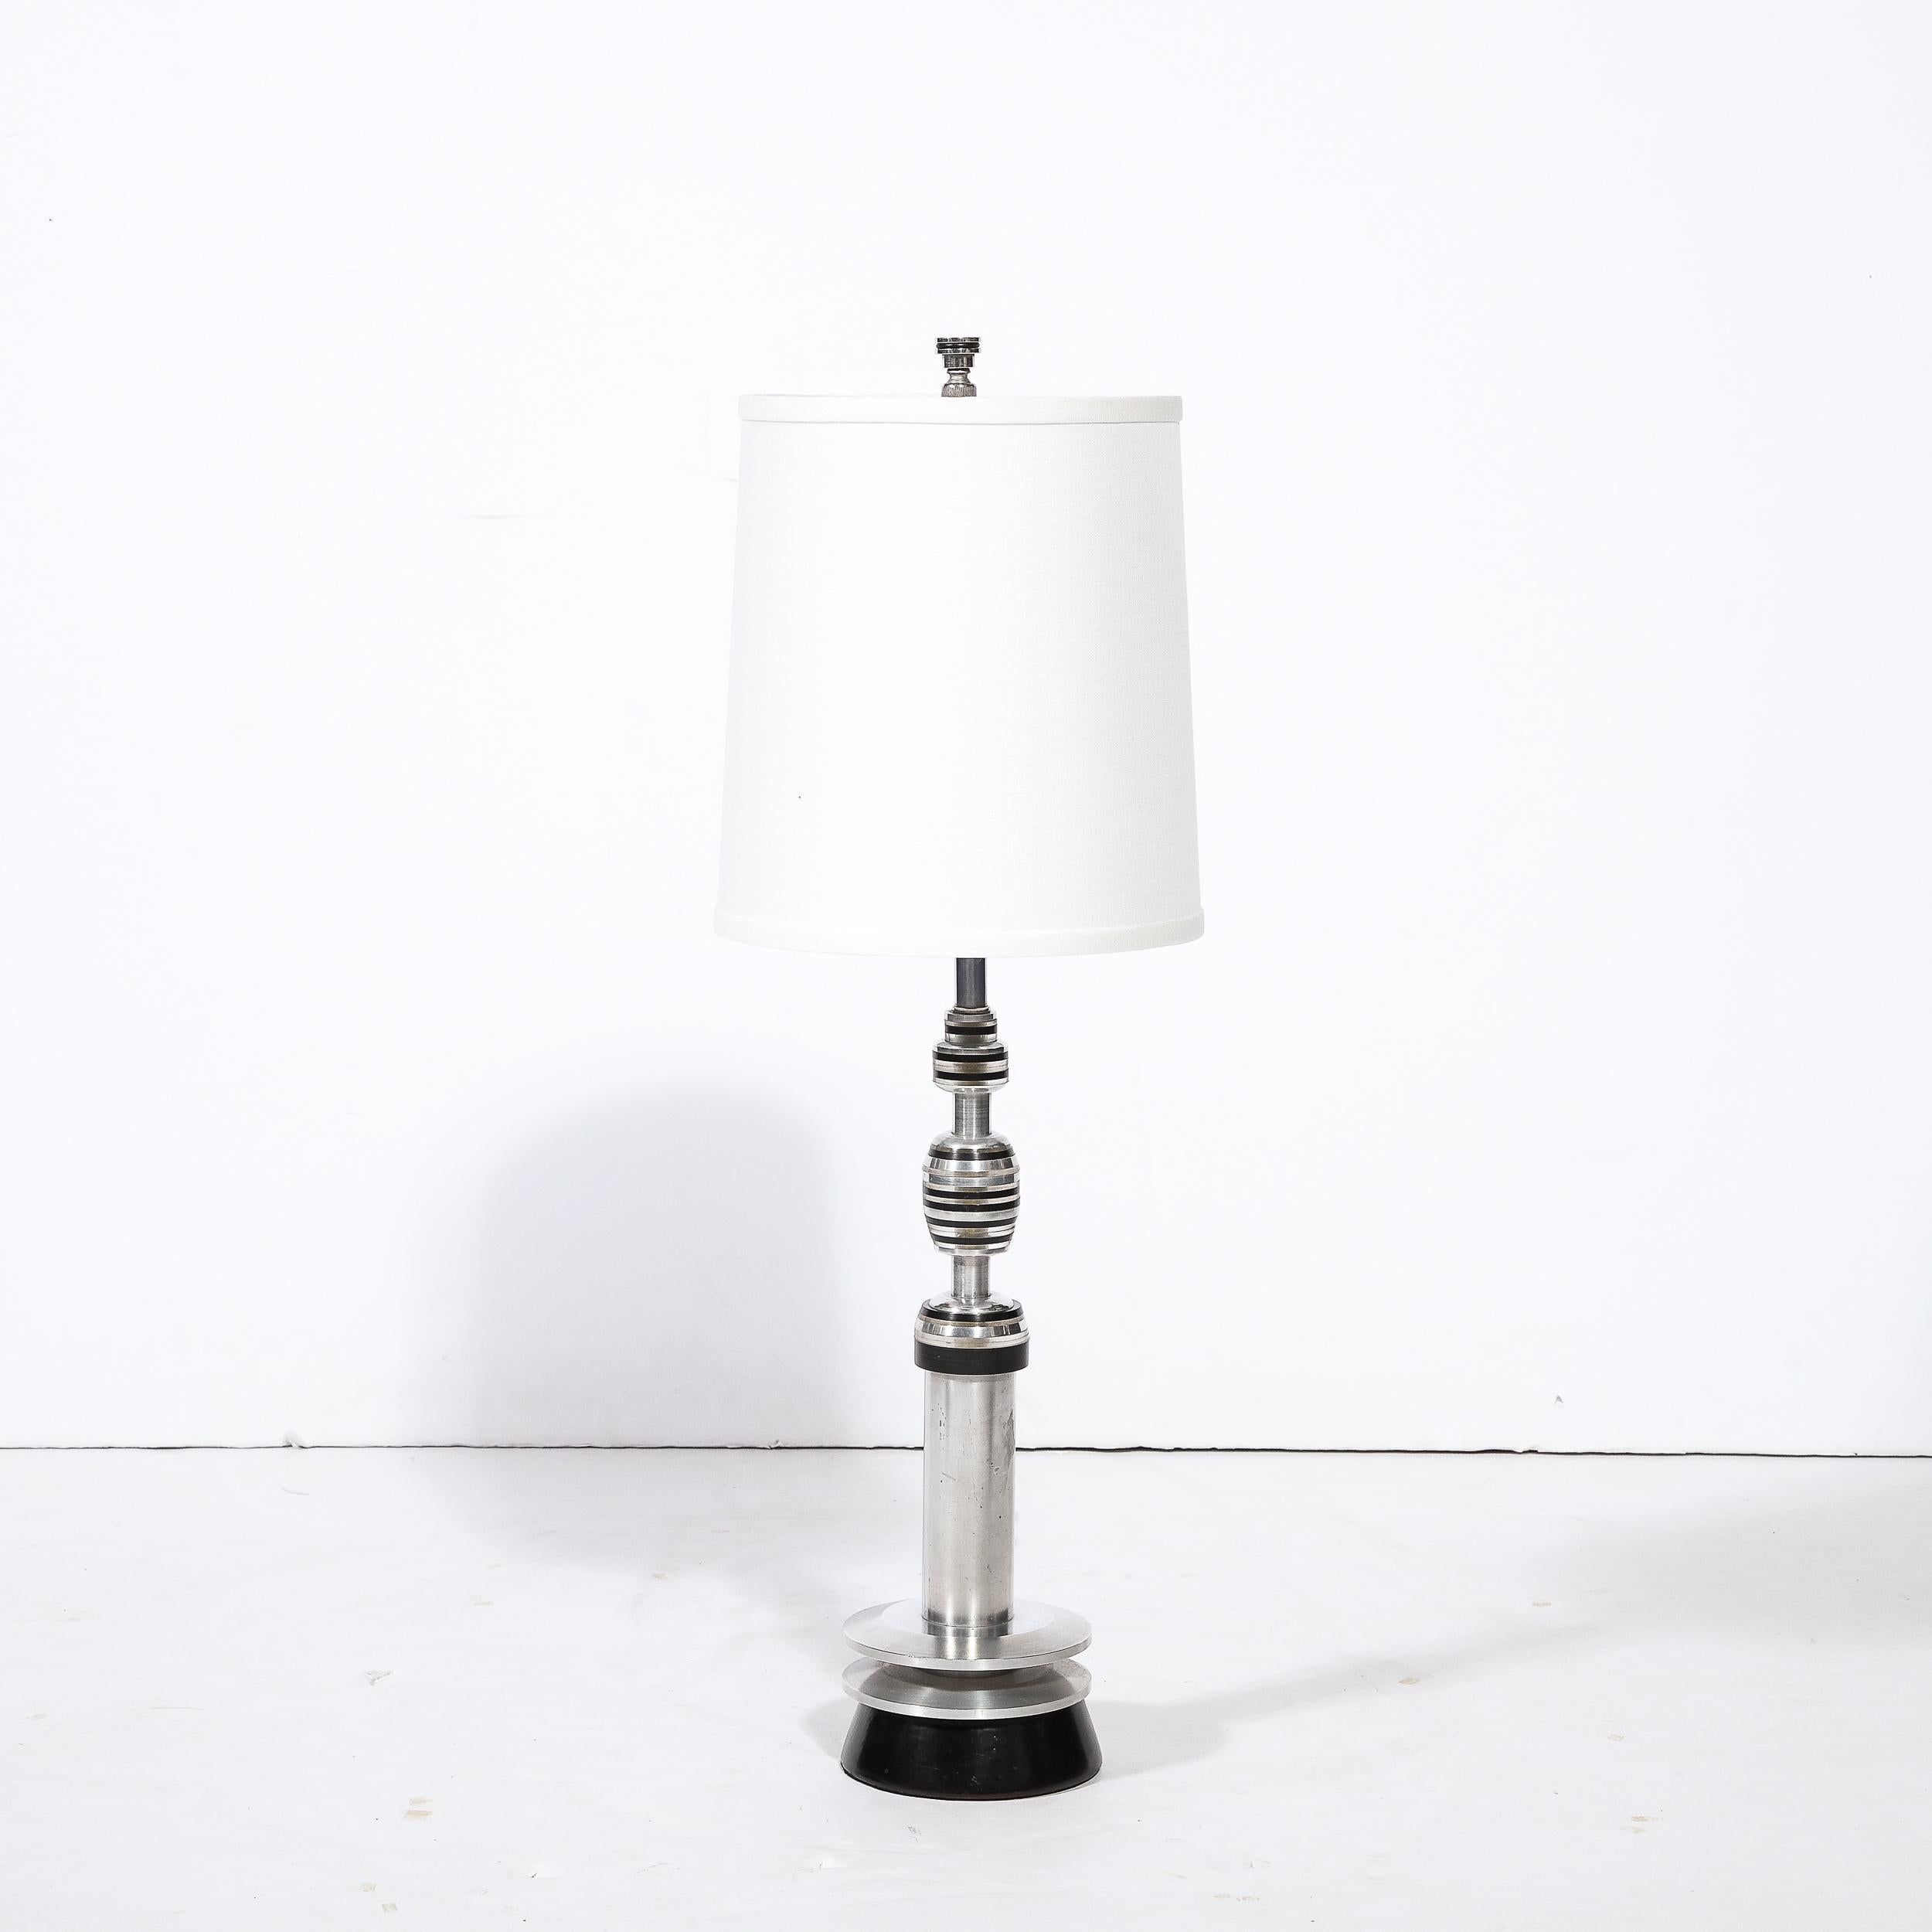 Cette lampe de table Art Déco raffinée de l'ère Machin a été réalisée aux Etats-Unis vers 1935. Il présente une base conique en bakélite noire de style gratte-ciel avec deux embellissements annulaires flottant au-dessus qui sont percés par le corps